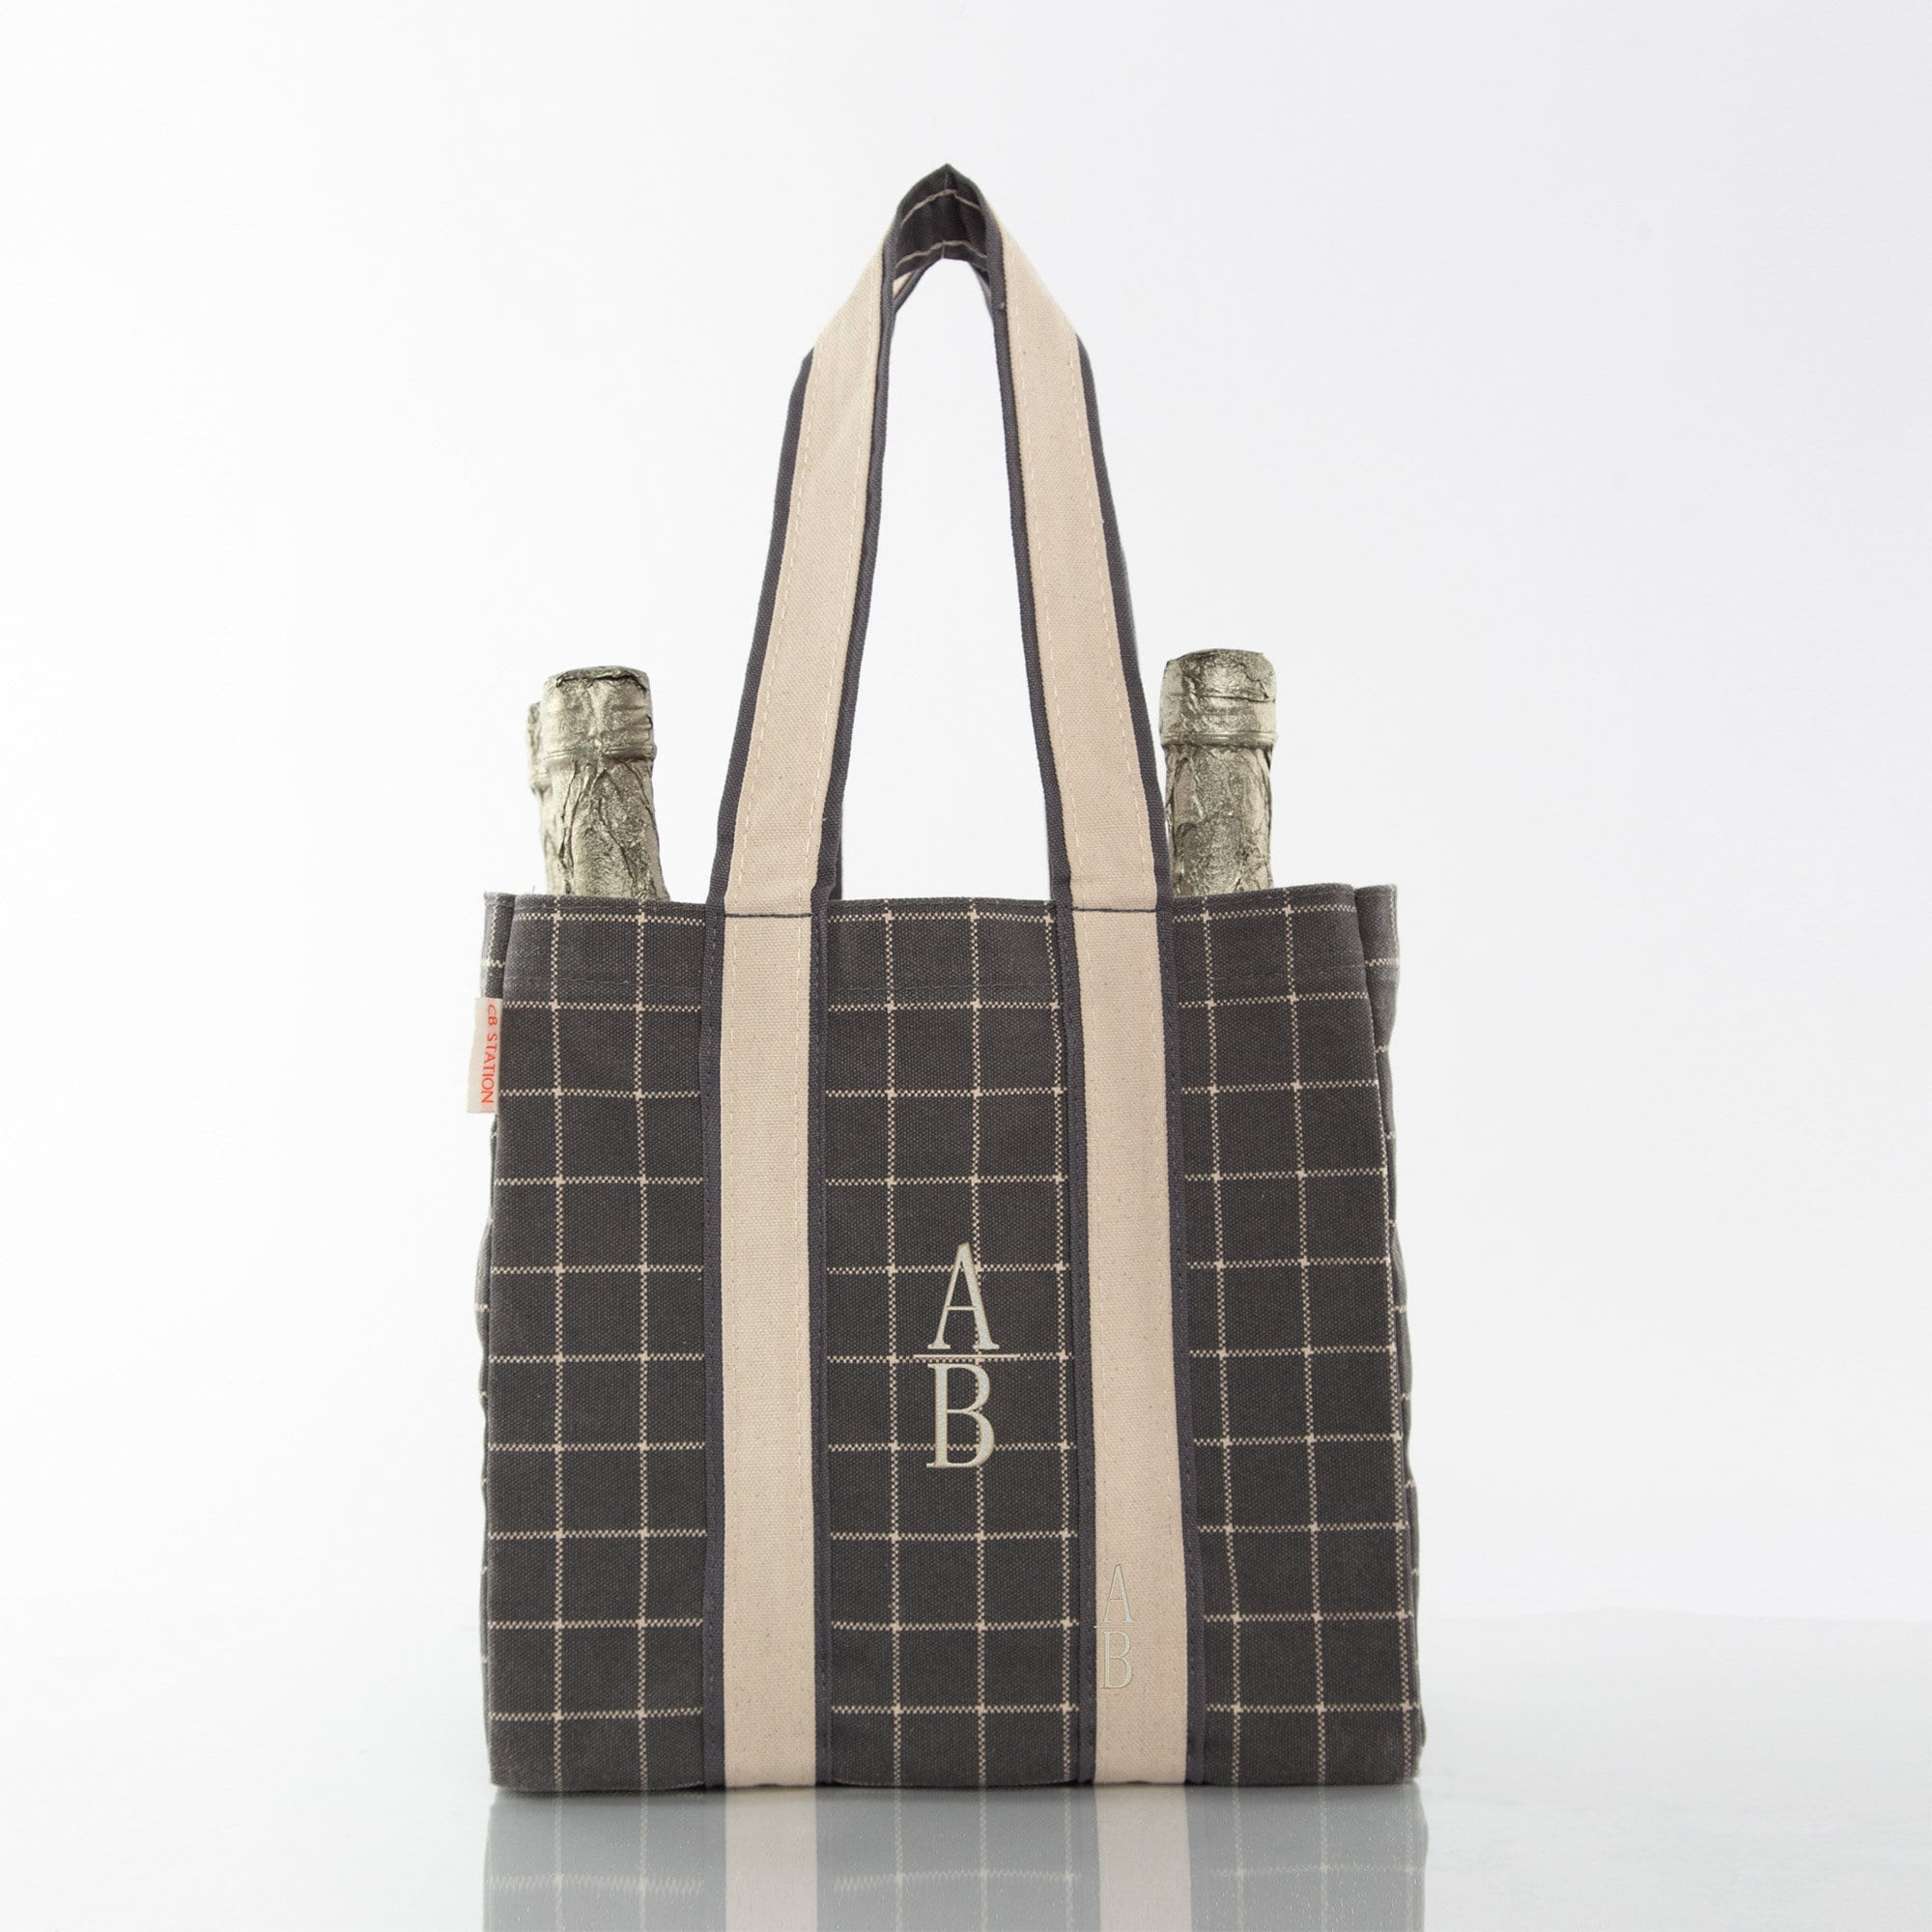 4 Bottle Wine Carrier Bag (Checkered/Black, 4 bottle)